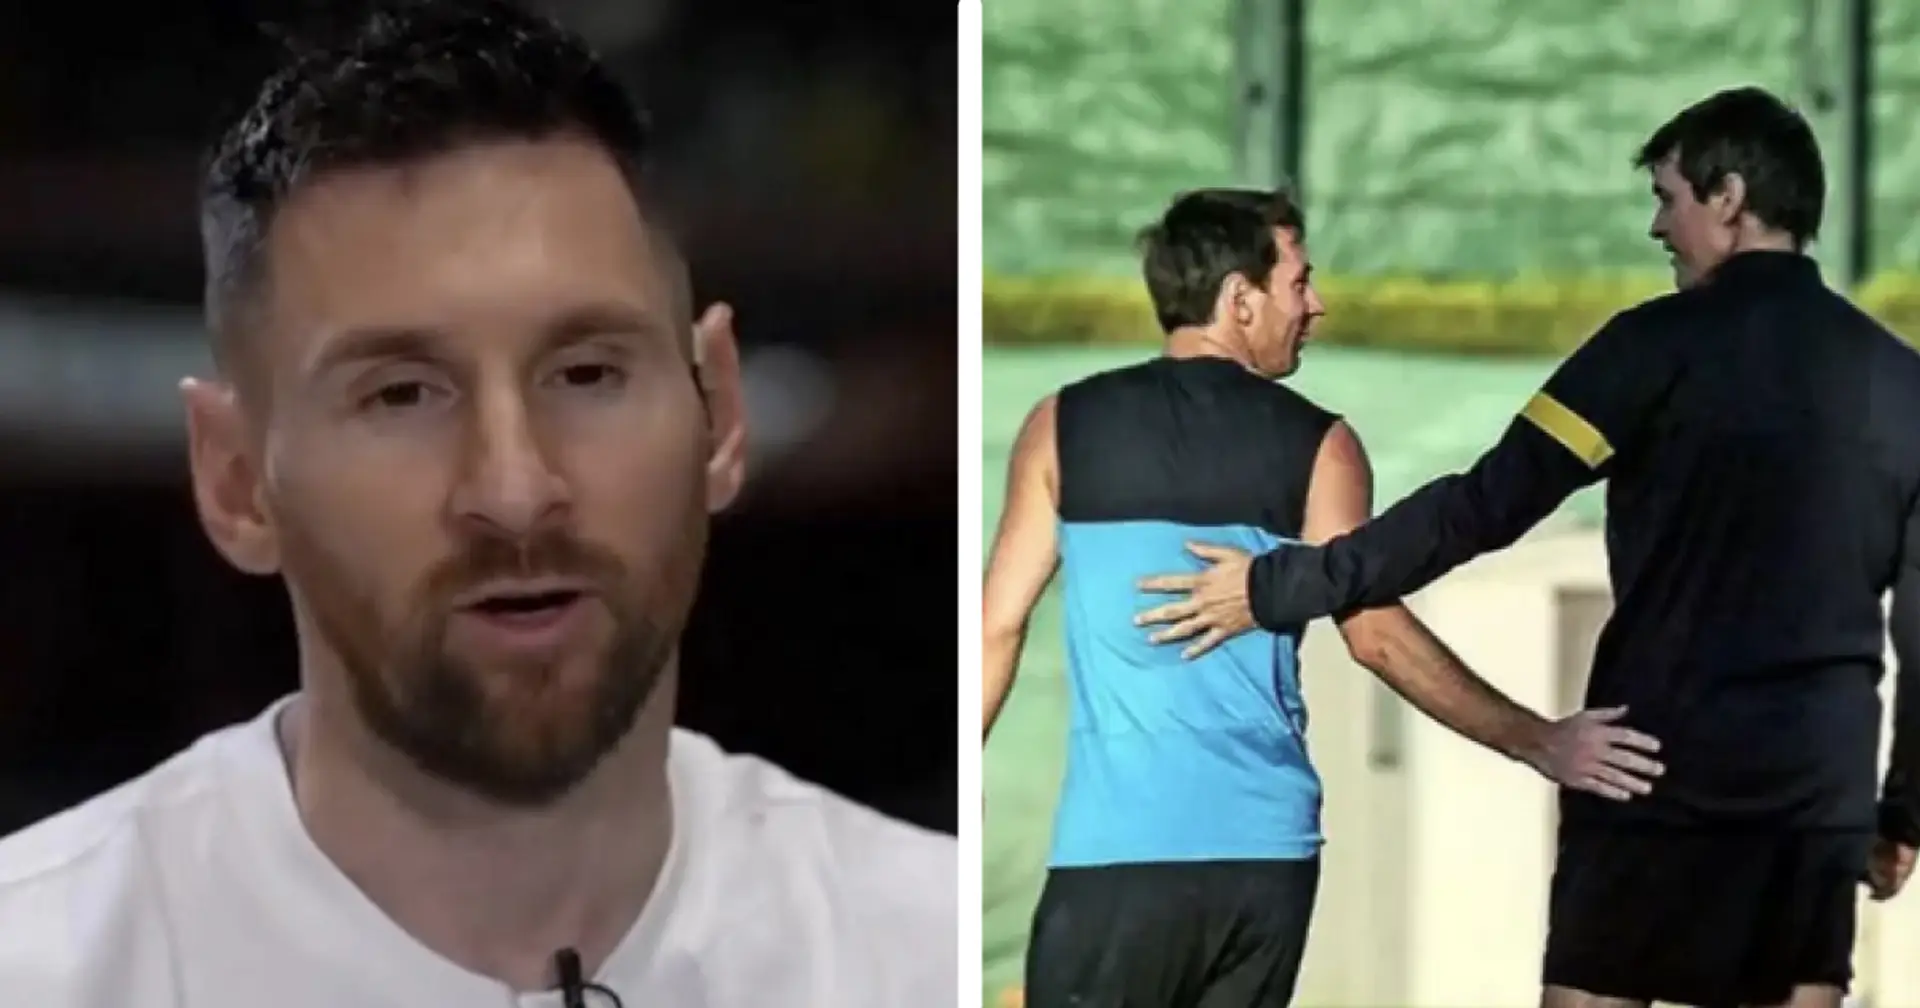 "Wir haben nicht vergessen": Leo Messi sendet Botschaft an verstorbene Barça-Legende